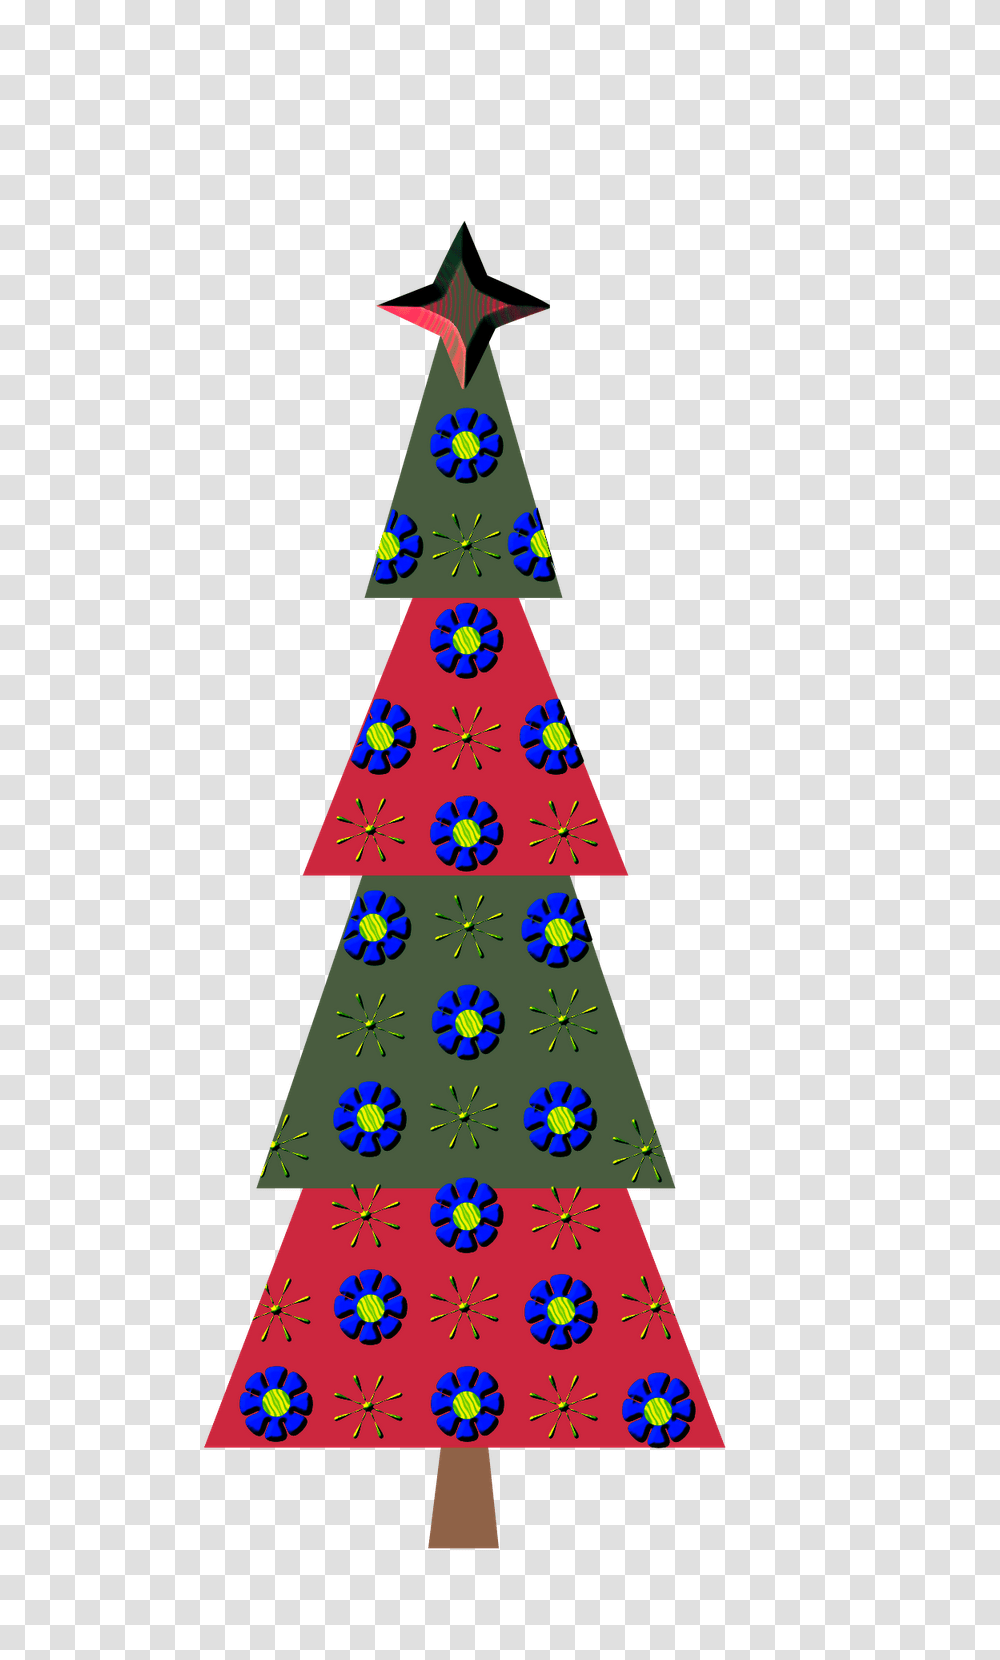 Christmas Tree Clip Art Clip Art, Plant, Ornament, Star Symbol Transparent Png